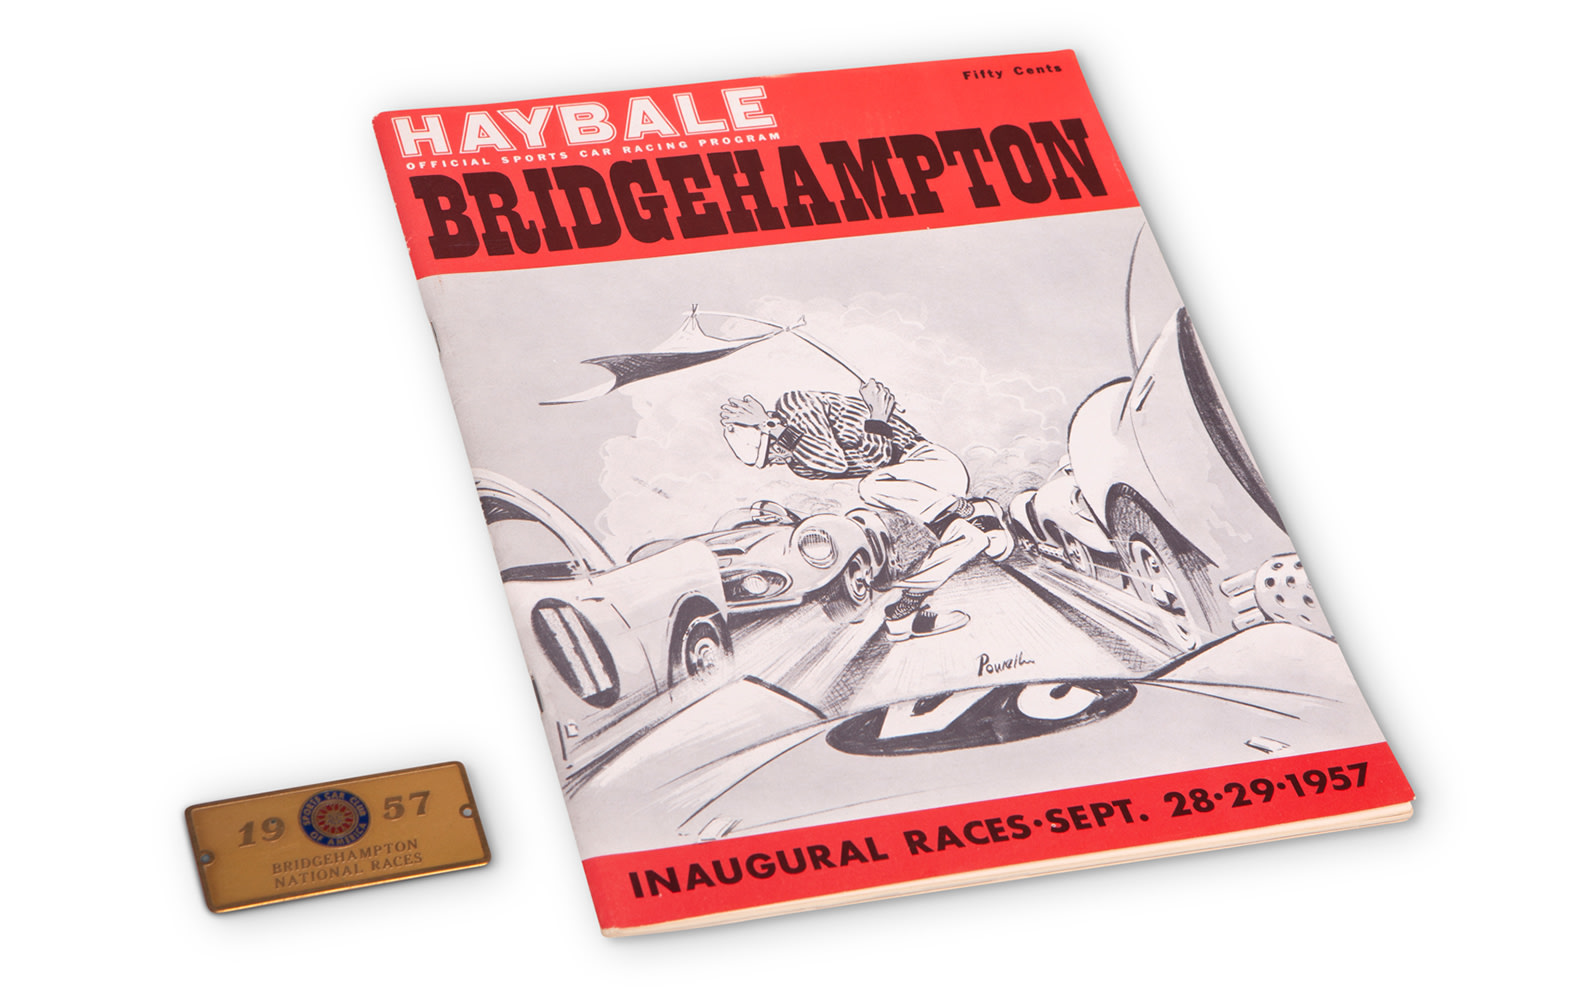 1957 Bridgehampton National Races Driver Medallion, Event Badge, and Official Race Program